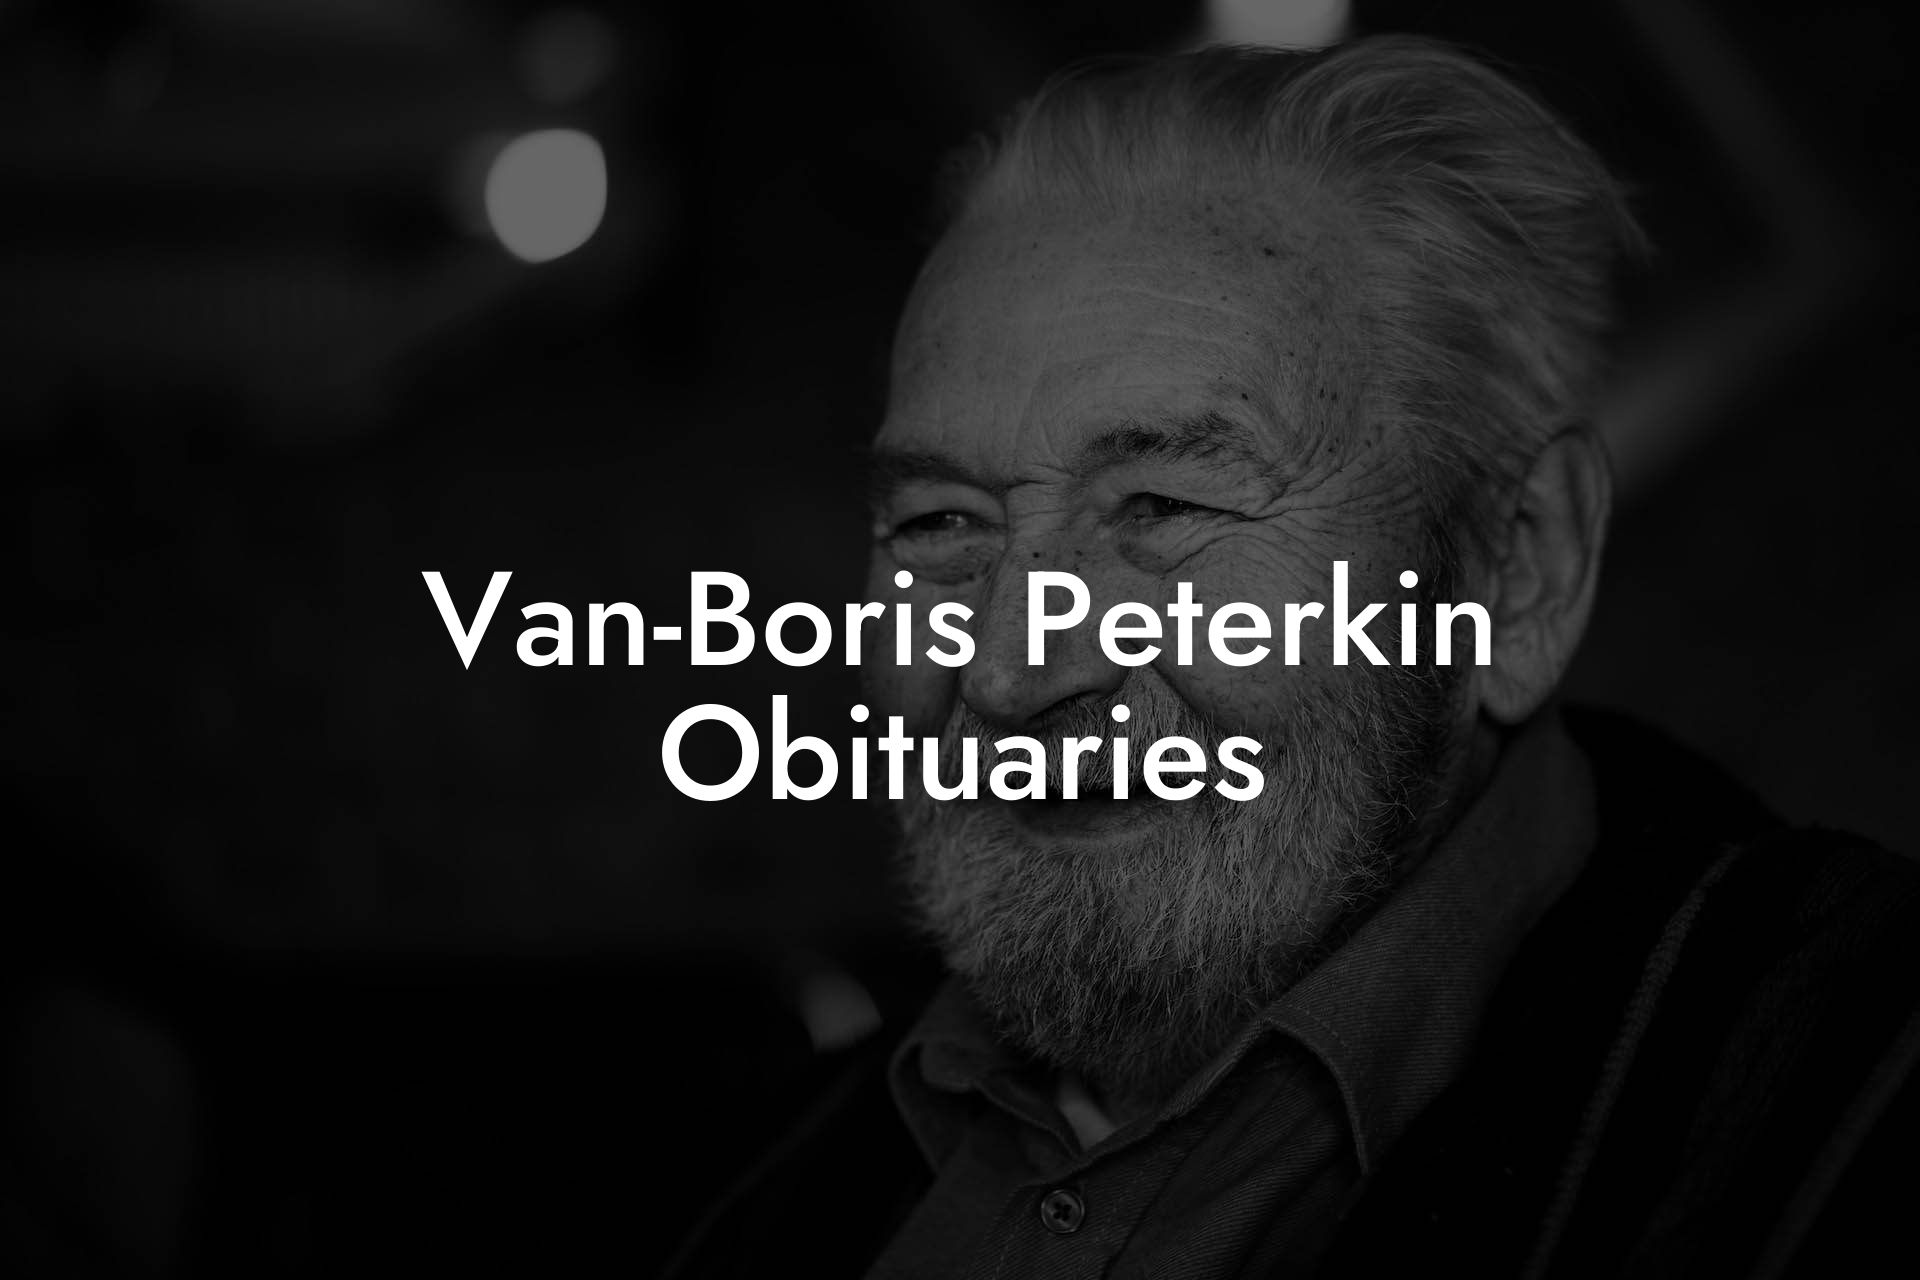 Van-Boris Peterkin Obituaries